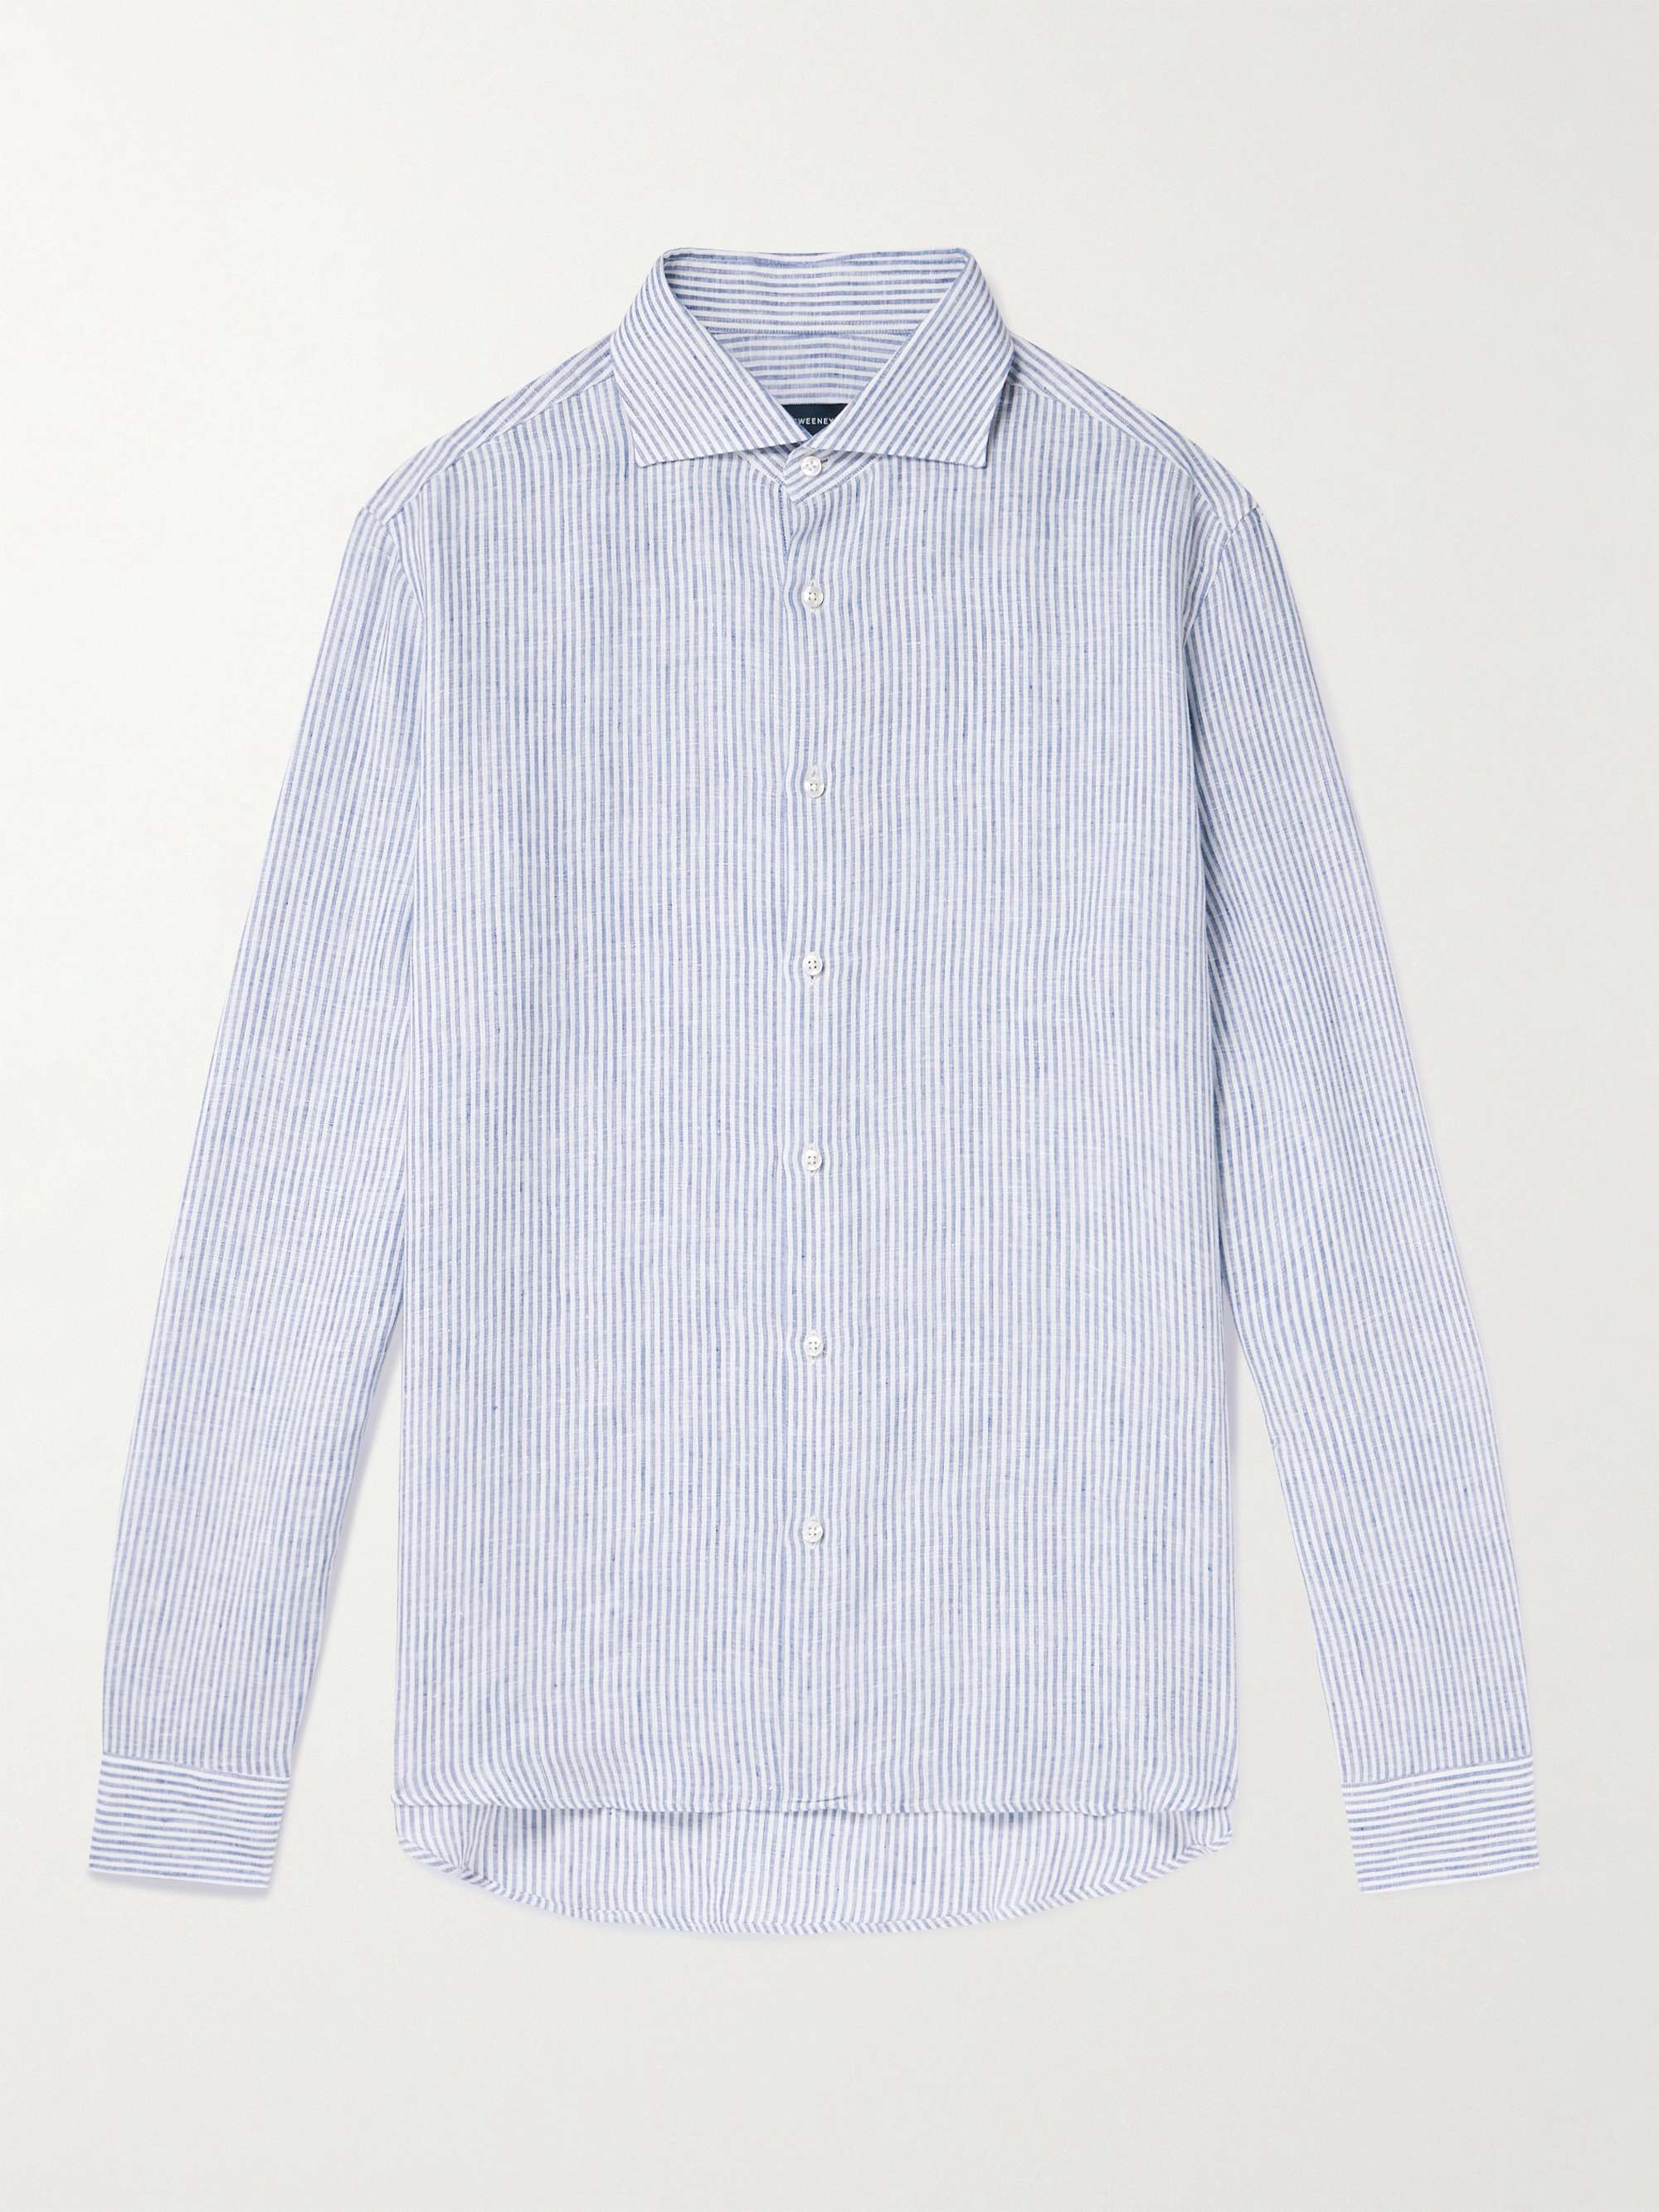 THOM SWEENEY Striped Linen Shirt for Men | MR PORTER